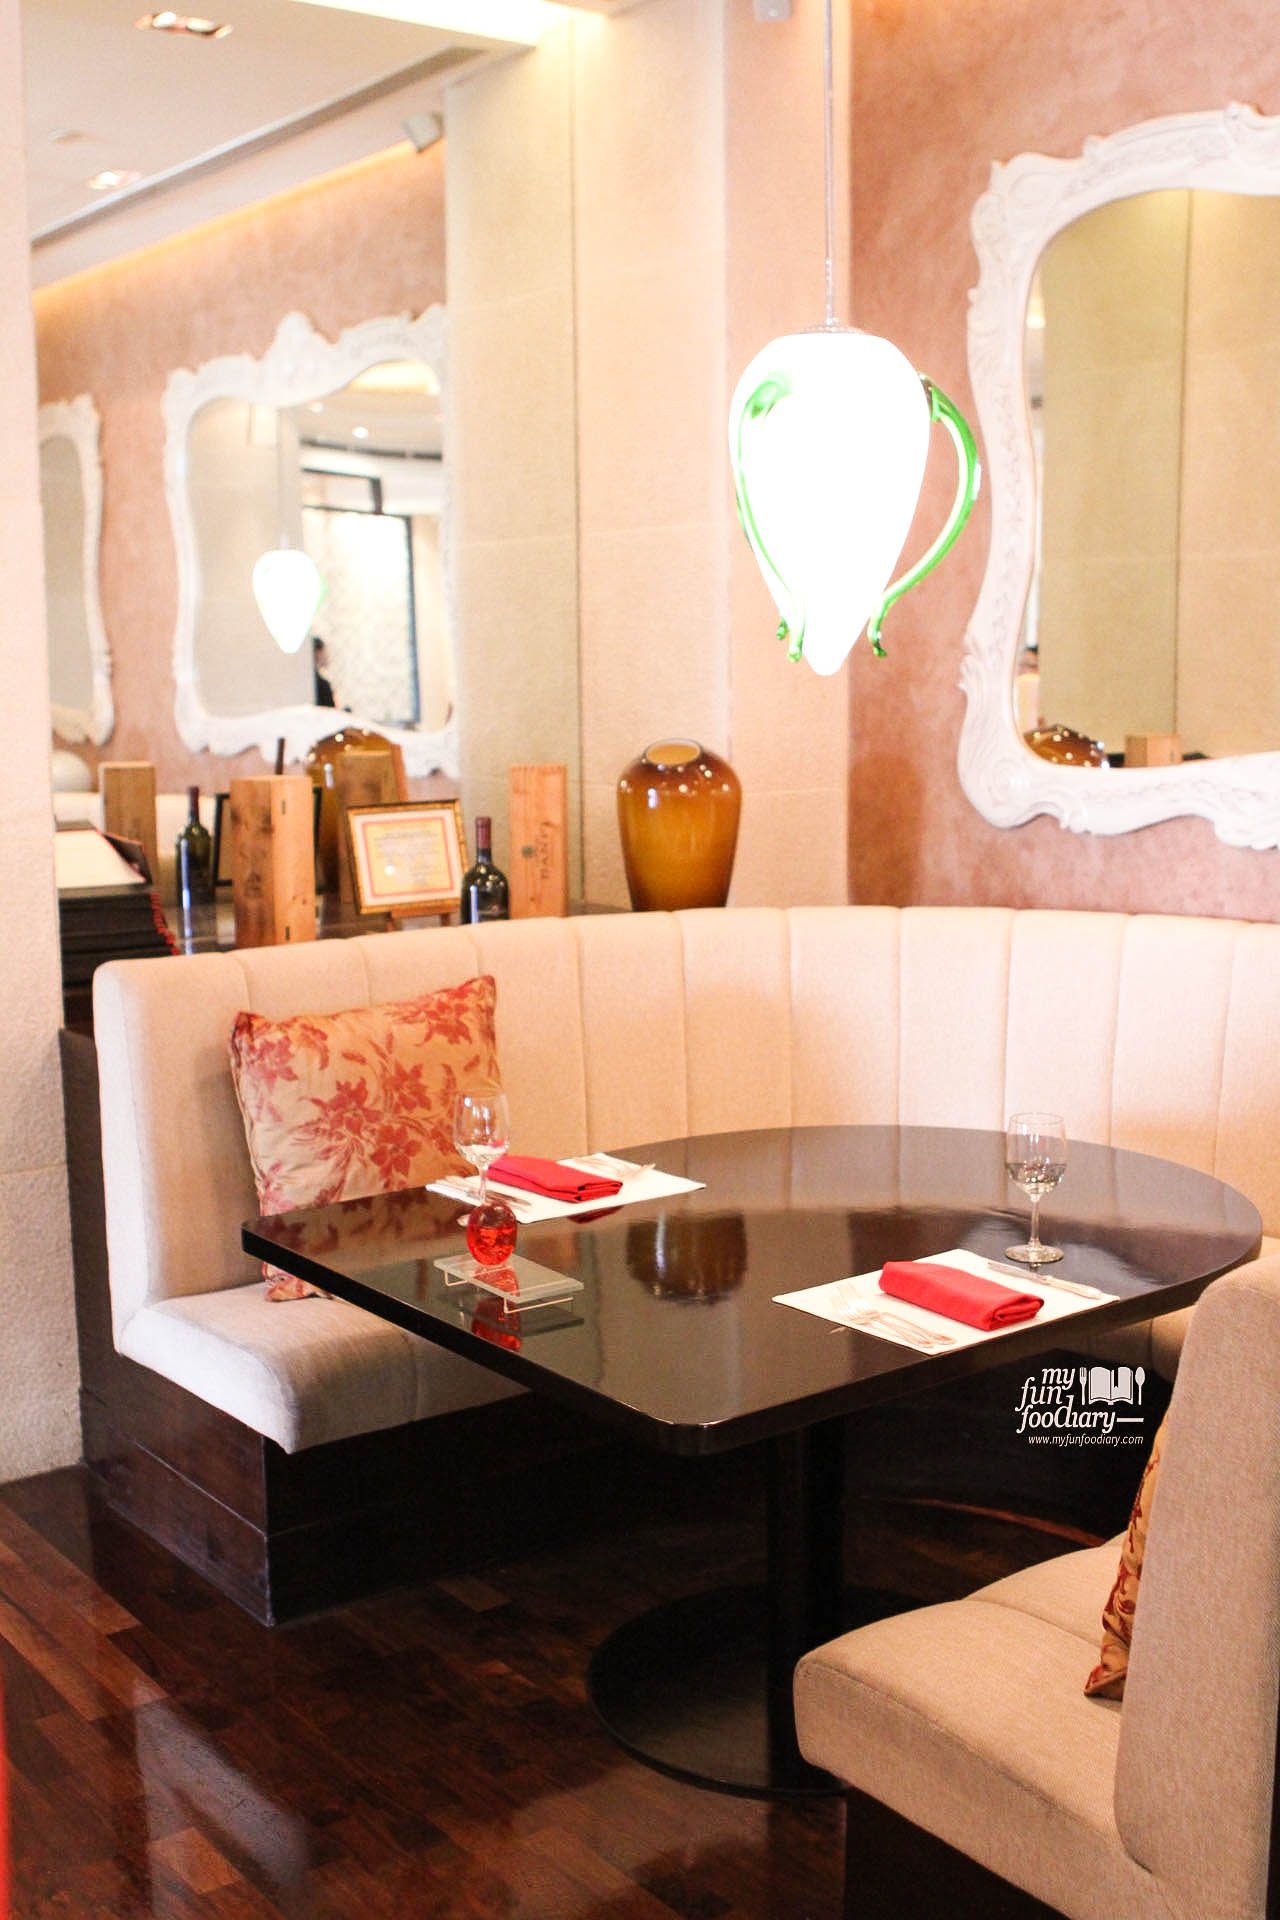 Lounge Area at Rosso Shangri-La Jakarta by Myfunfoodiary